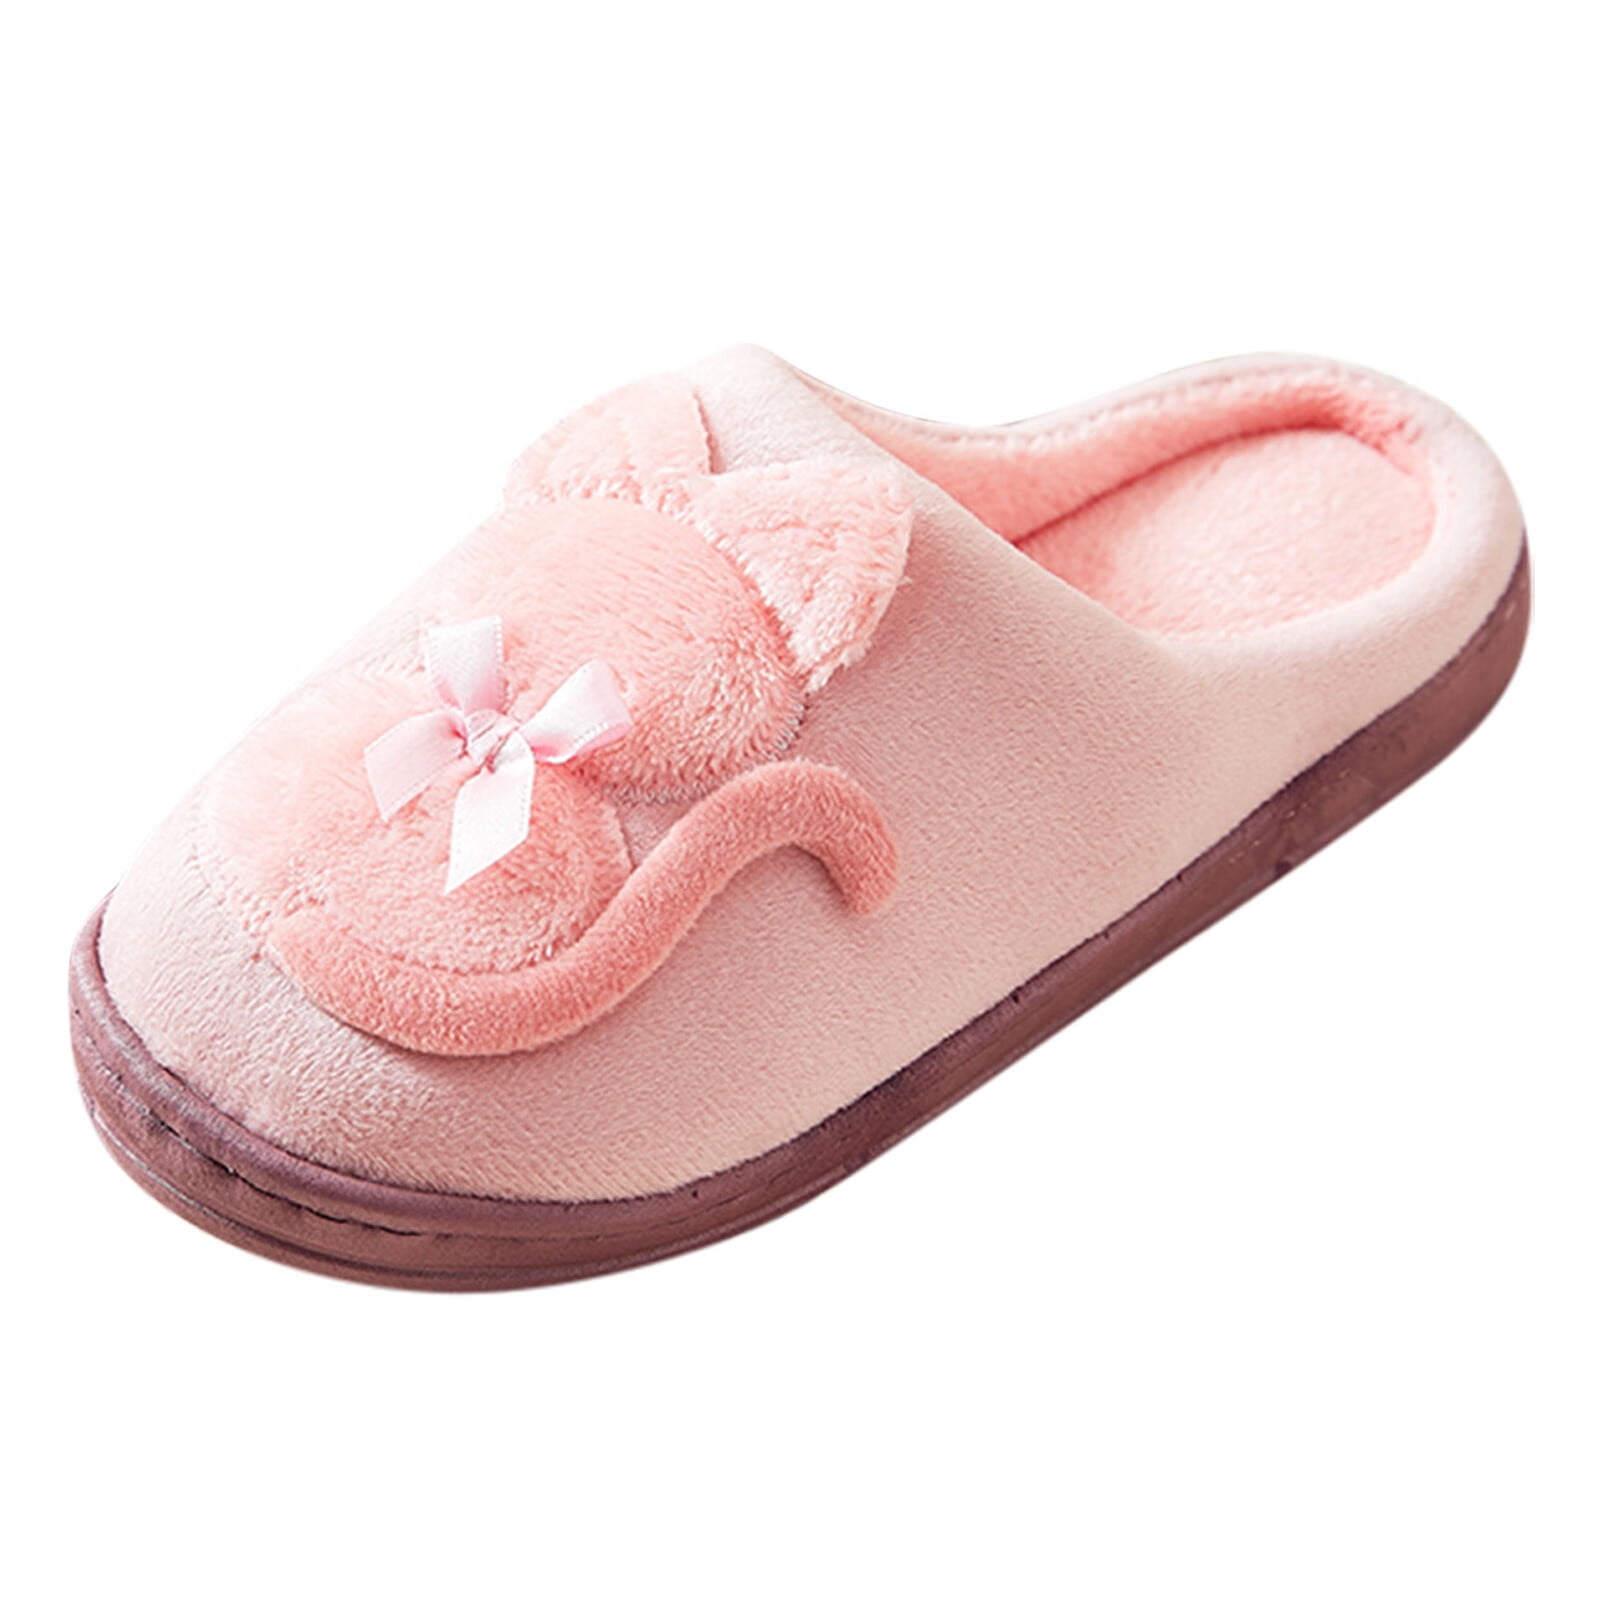 Women's pink faux fur bootie slippers, VASTI MUPPET